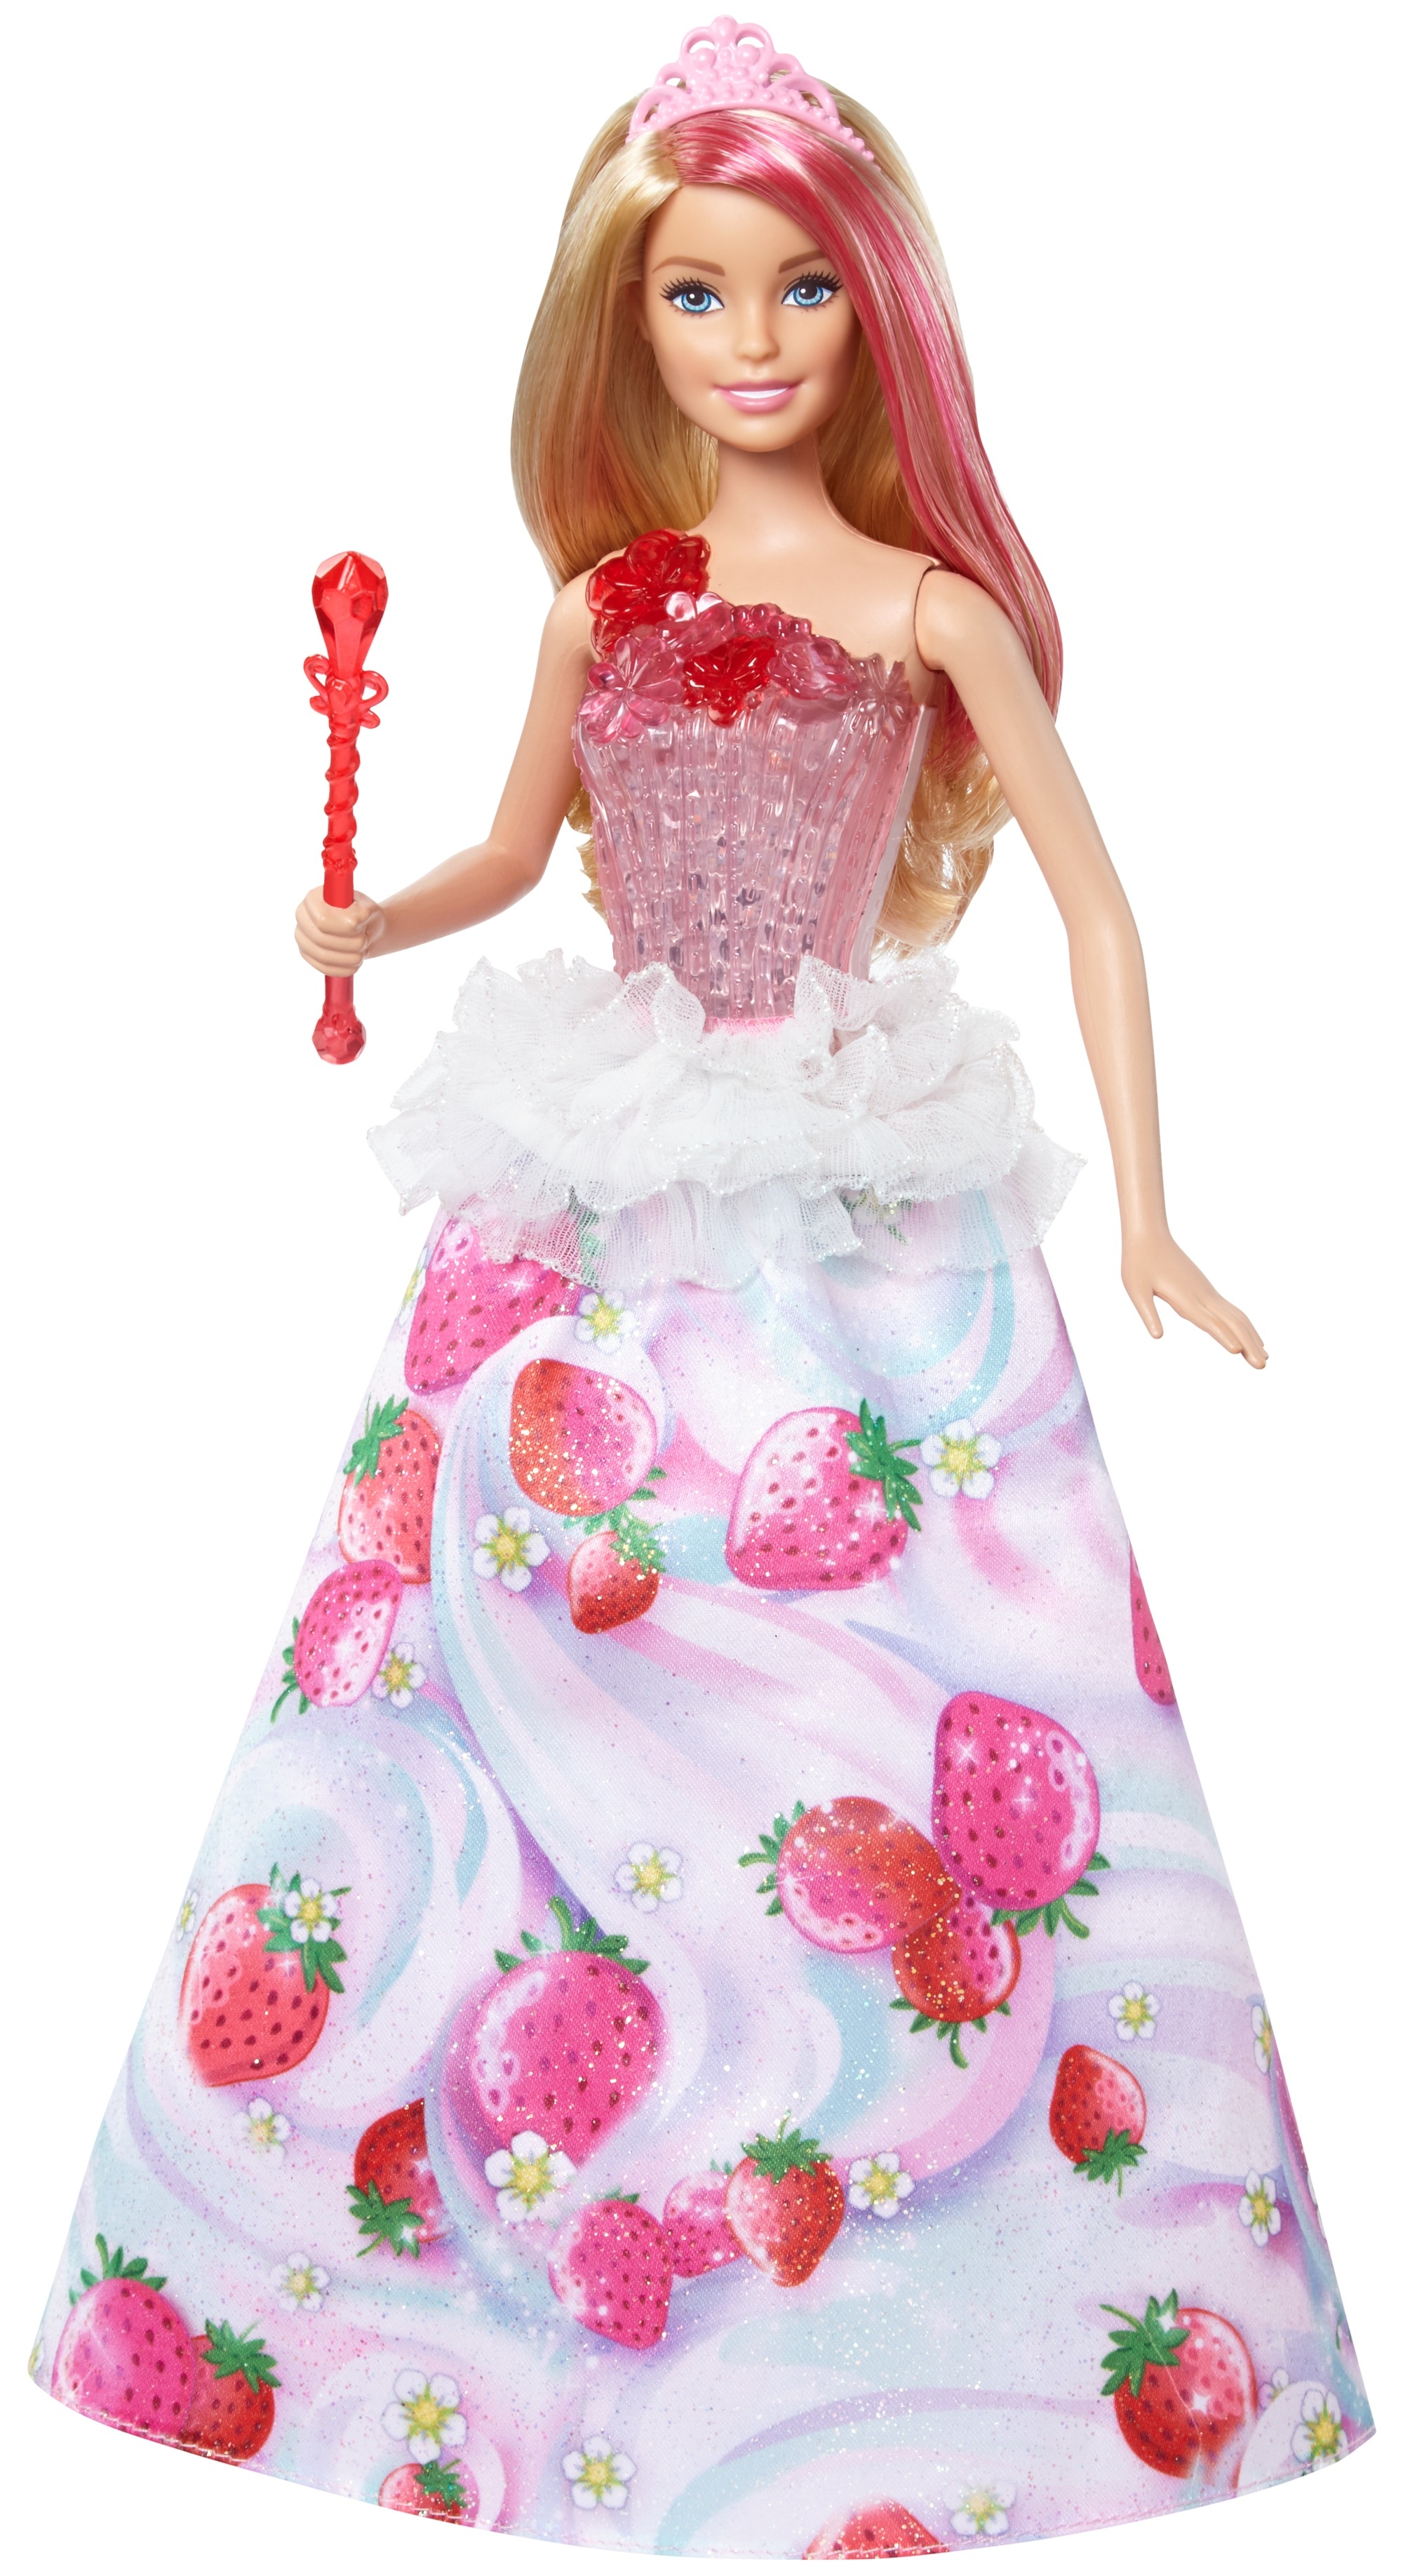 Игрушка барби купить. Кукла Барби принцесса Дримтопия. Кукла Barbie конфетная принцесса, 29 см, dyx28. Barbie принцесса Дримтопии. Кукла Барби Дримтопия конфетная принцесса.